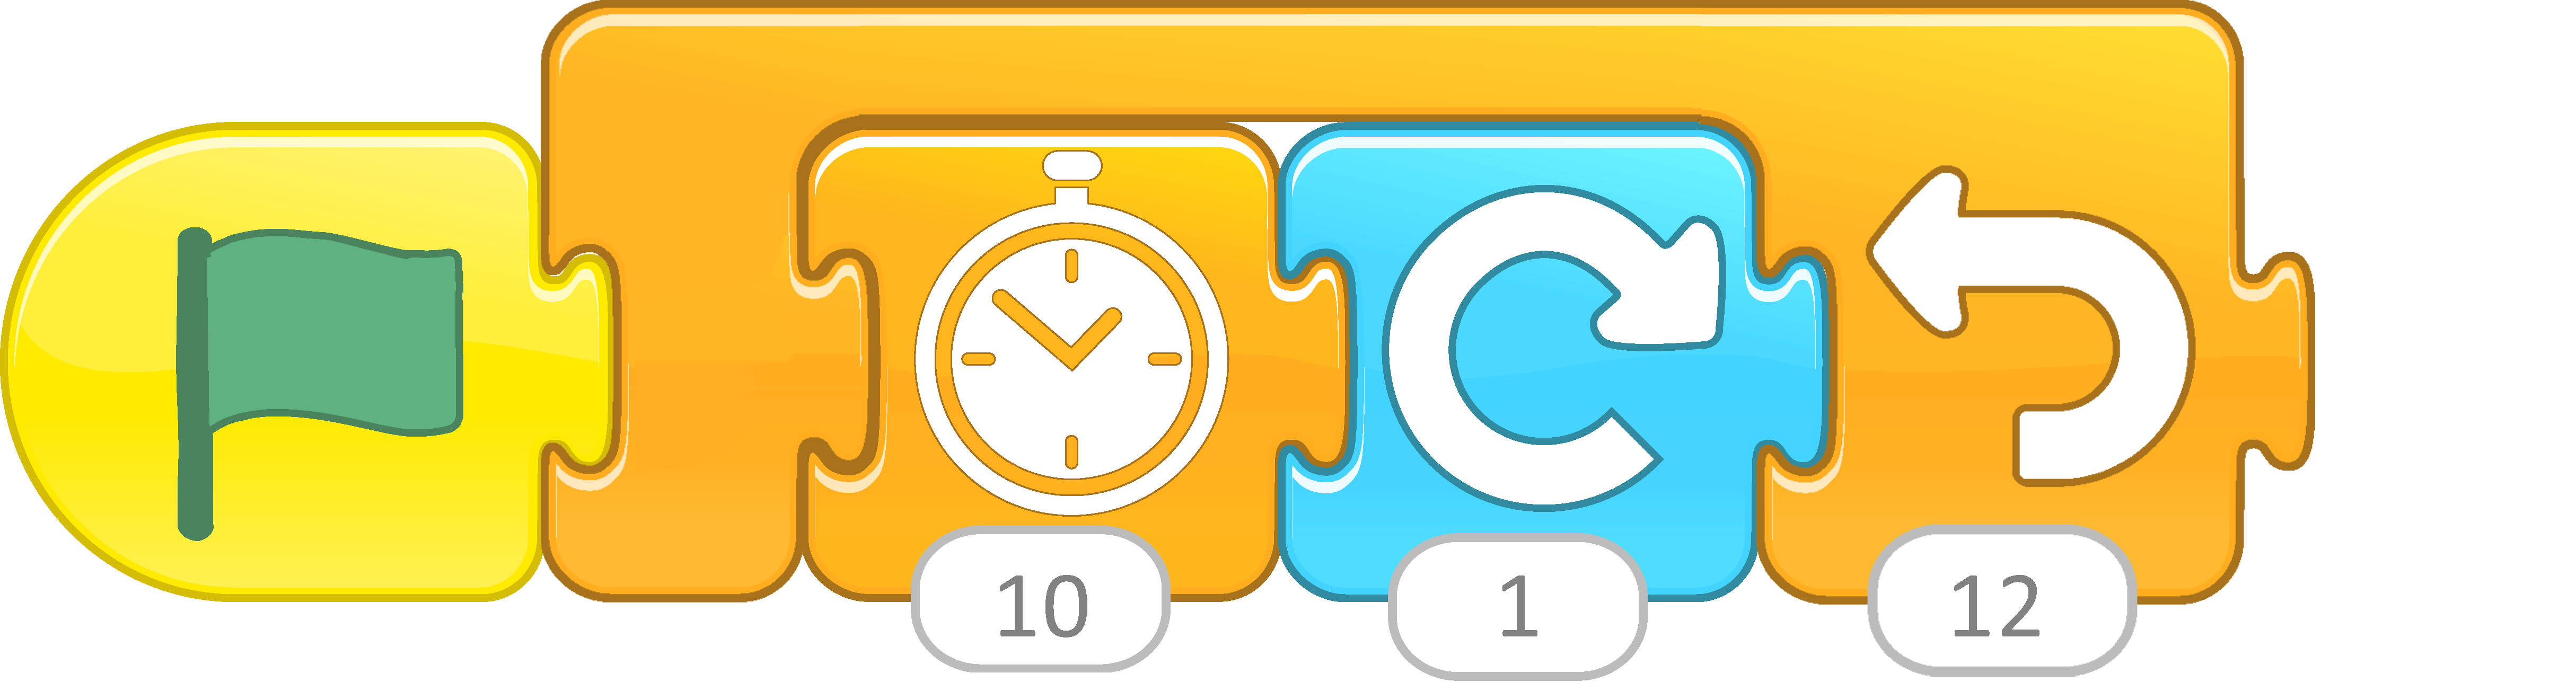 How to create a simple timer in ScratchJr? - ScratchJr Fun